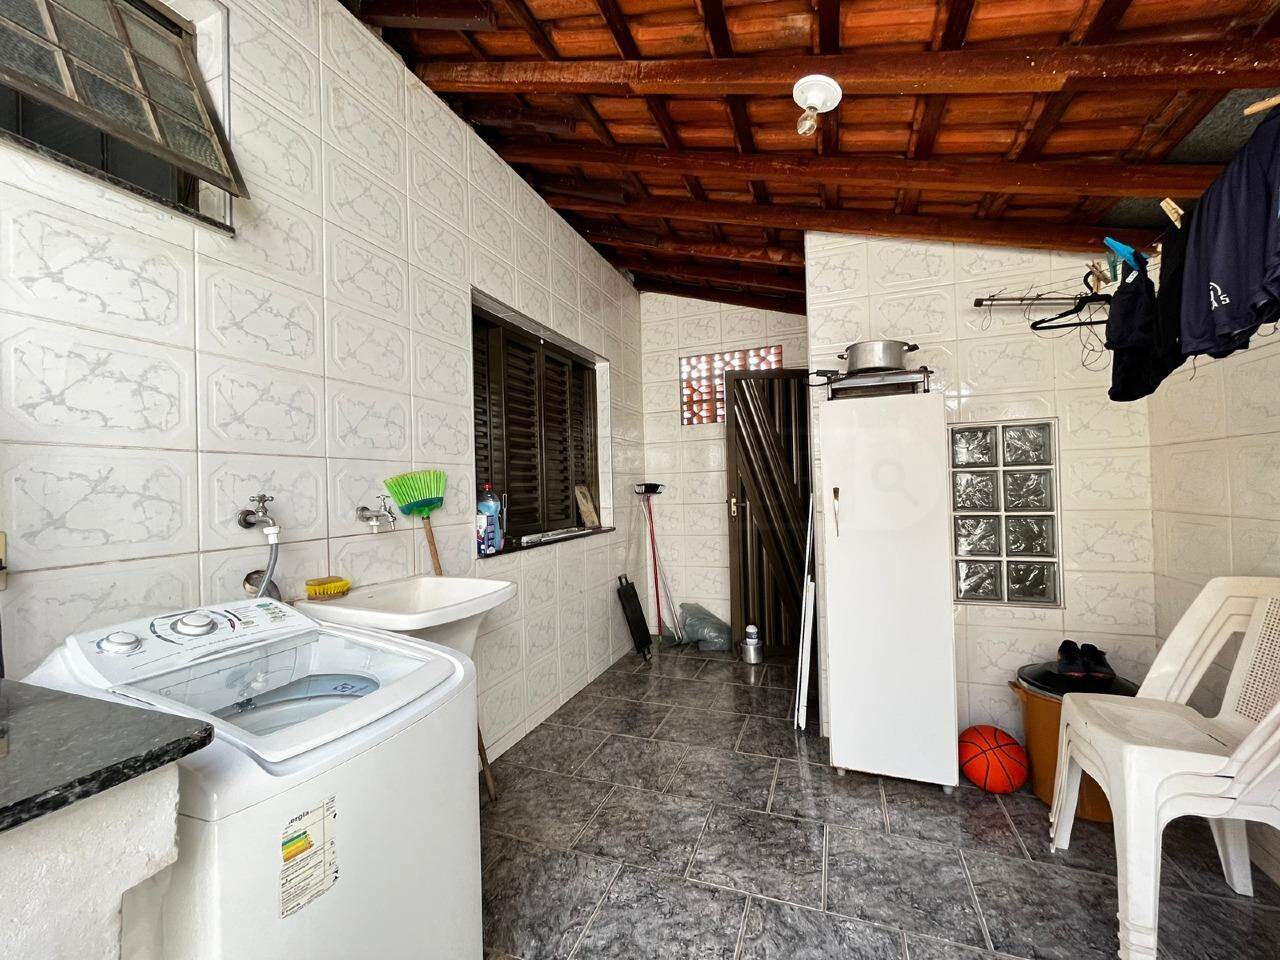 Casa à venda, 3 quartos, 2 vagas, no bairro Nova América em Piracicaba - SP